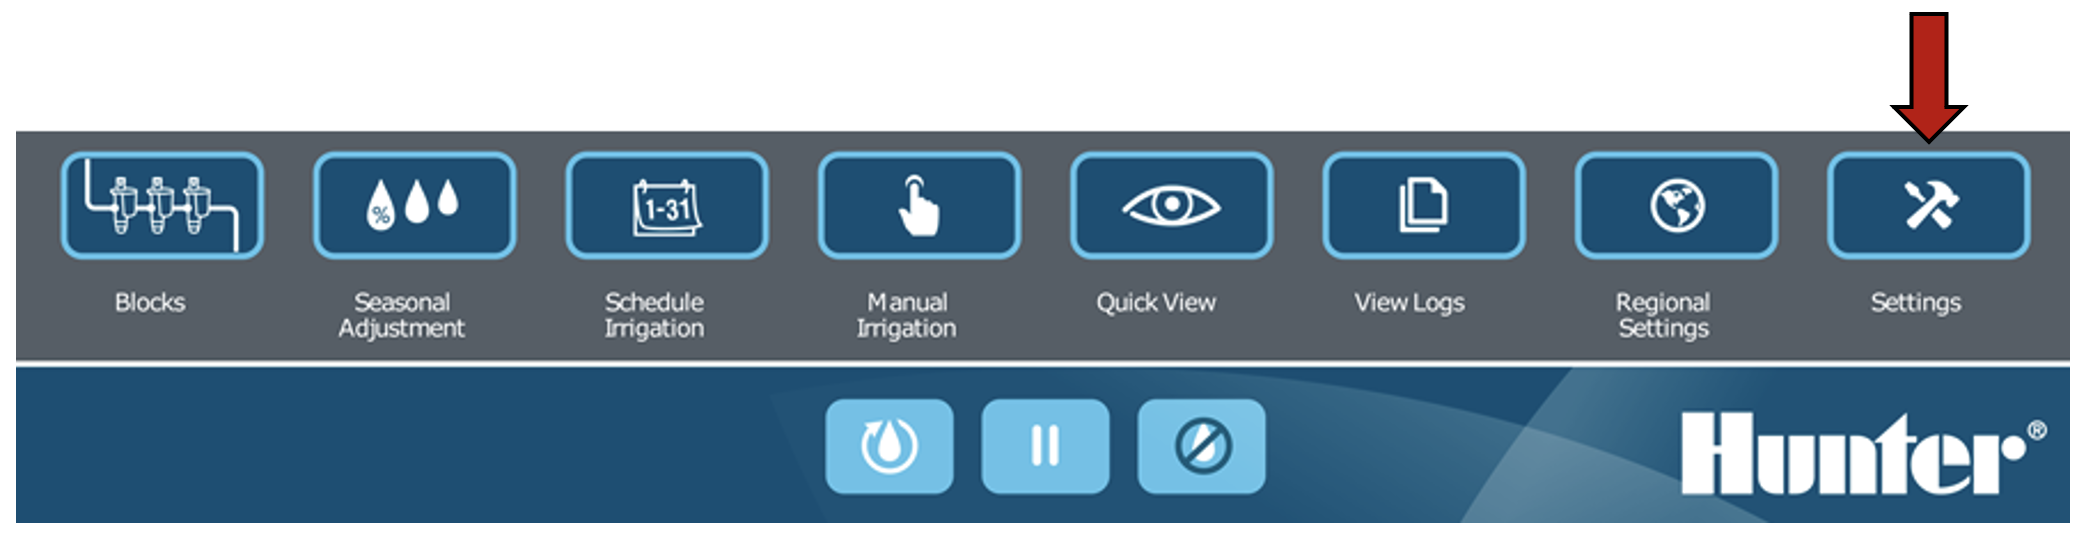 Imagen de la interfaz que muestra el botón Settings seleccionado.